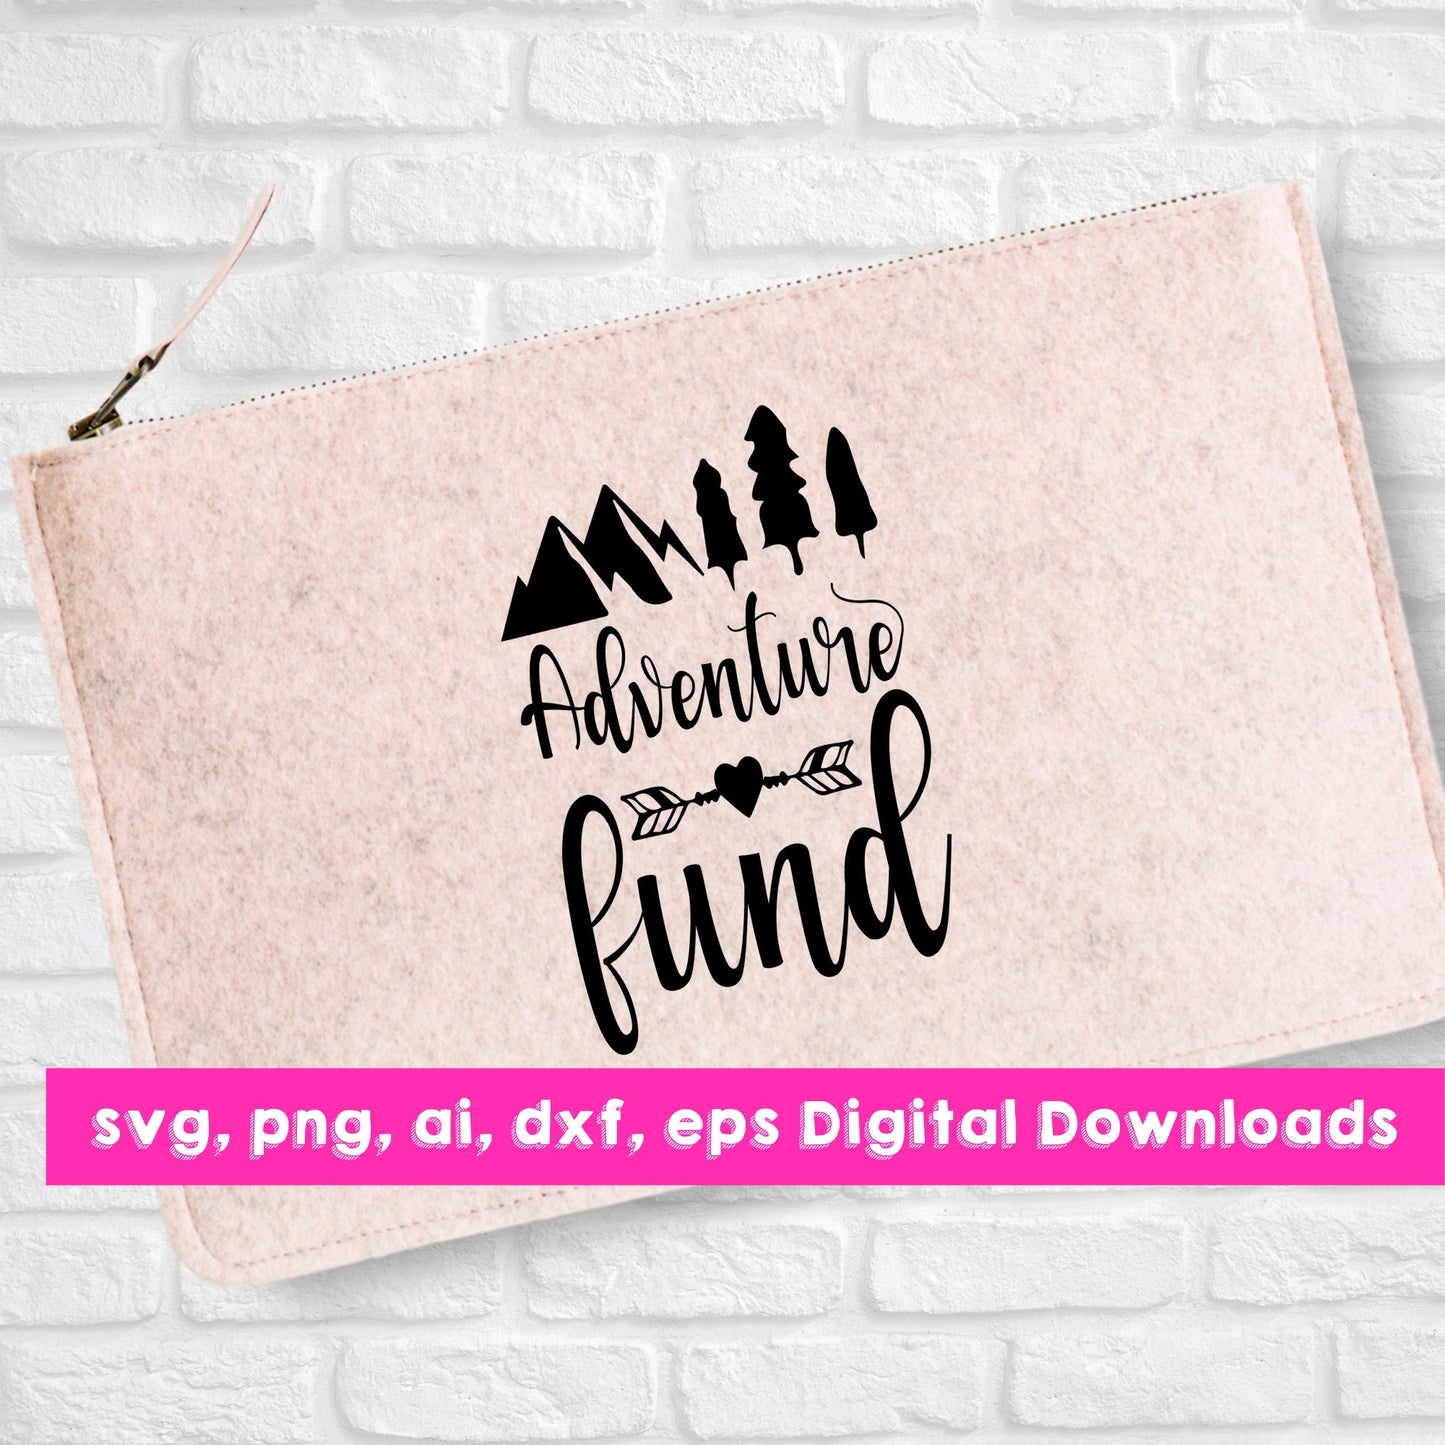 Adventure Fund